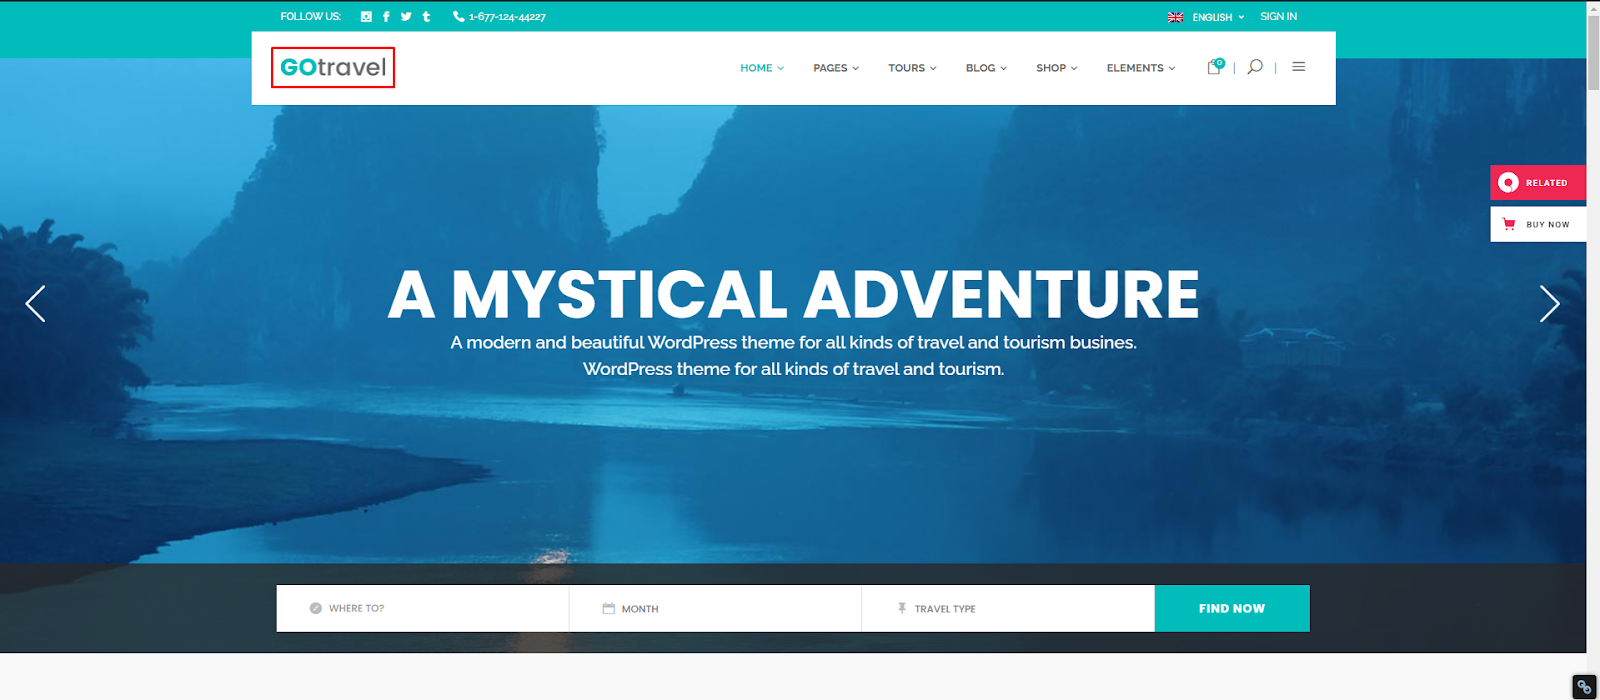 GoTravel - Travel Agency WordPress Theme